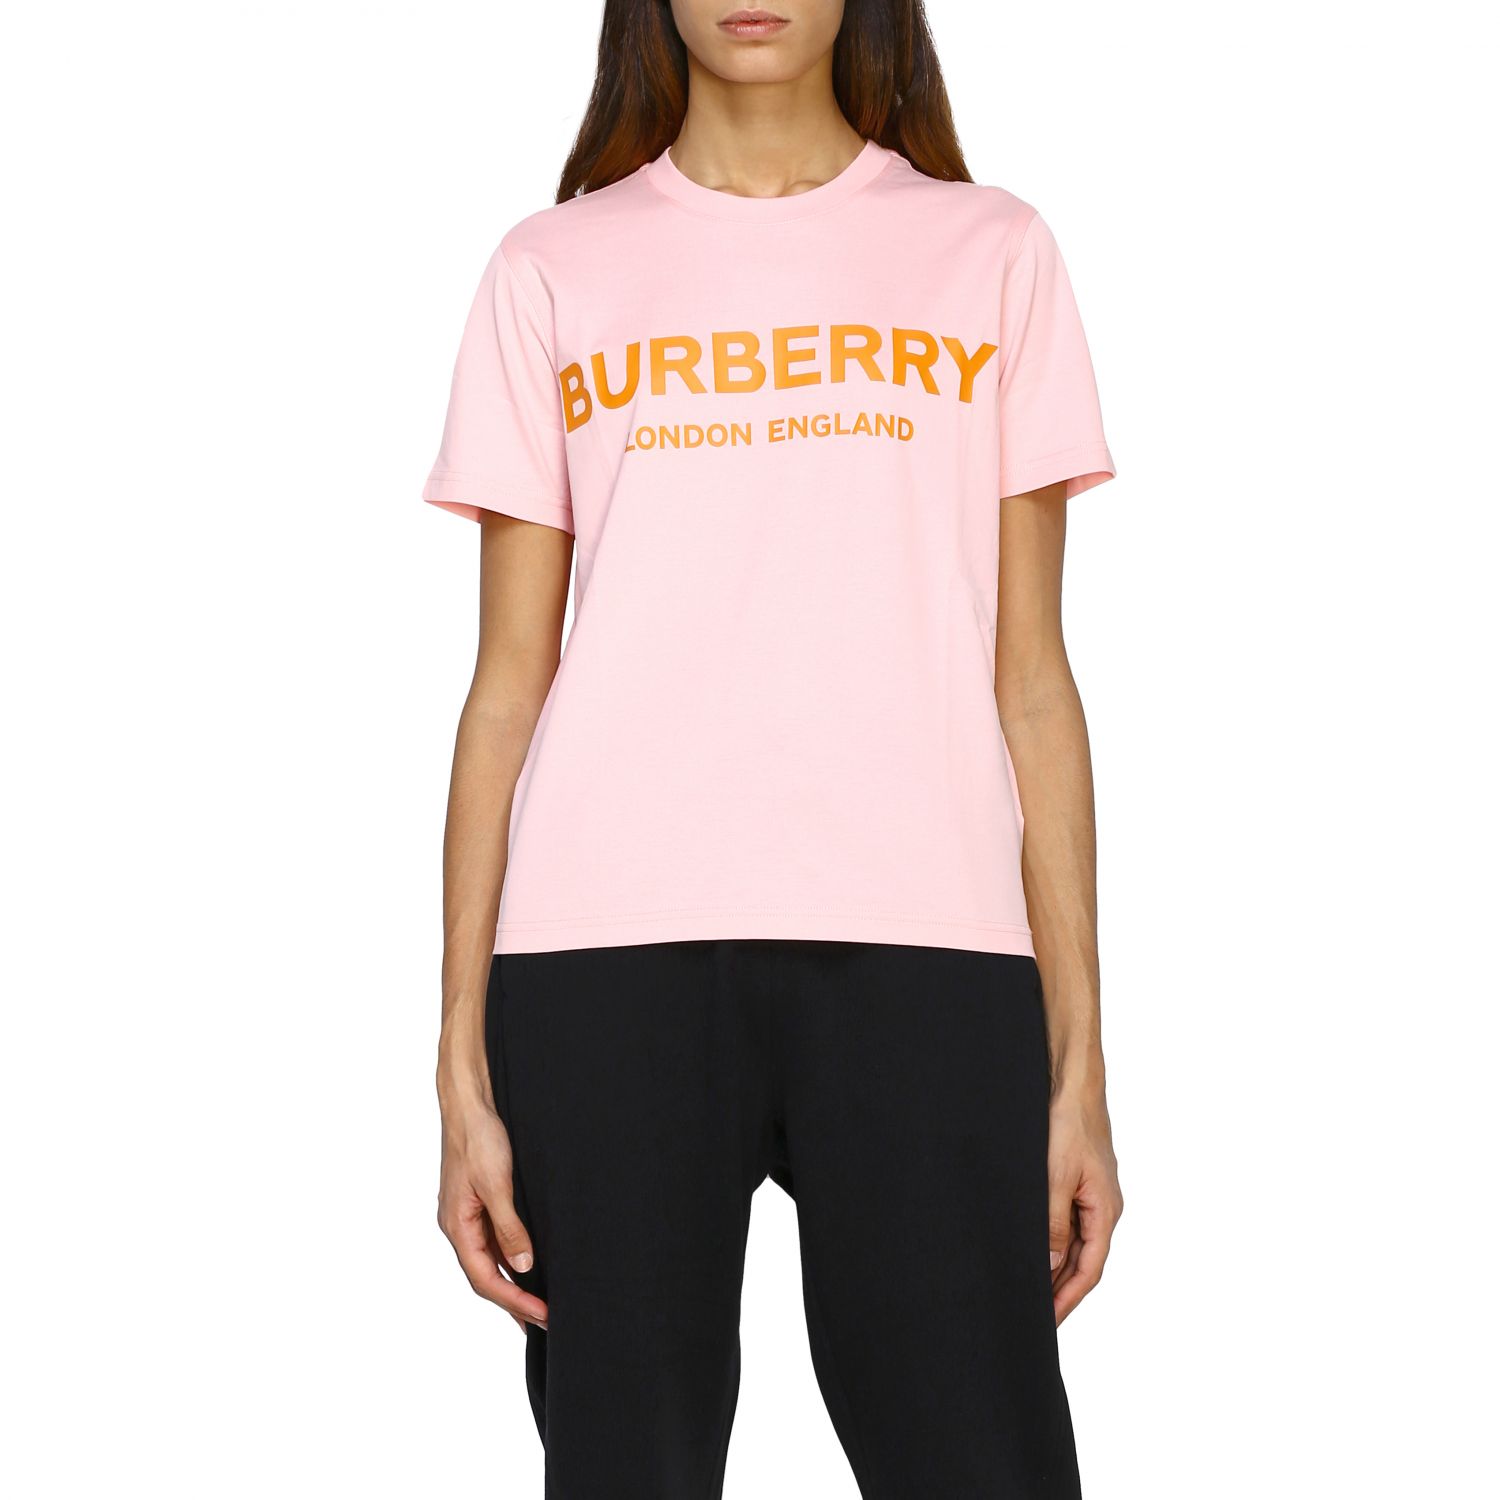 burberry t shirt womens pink